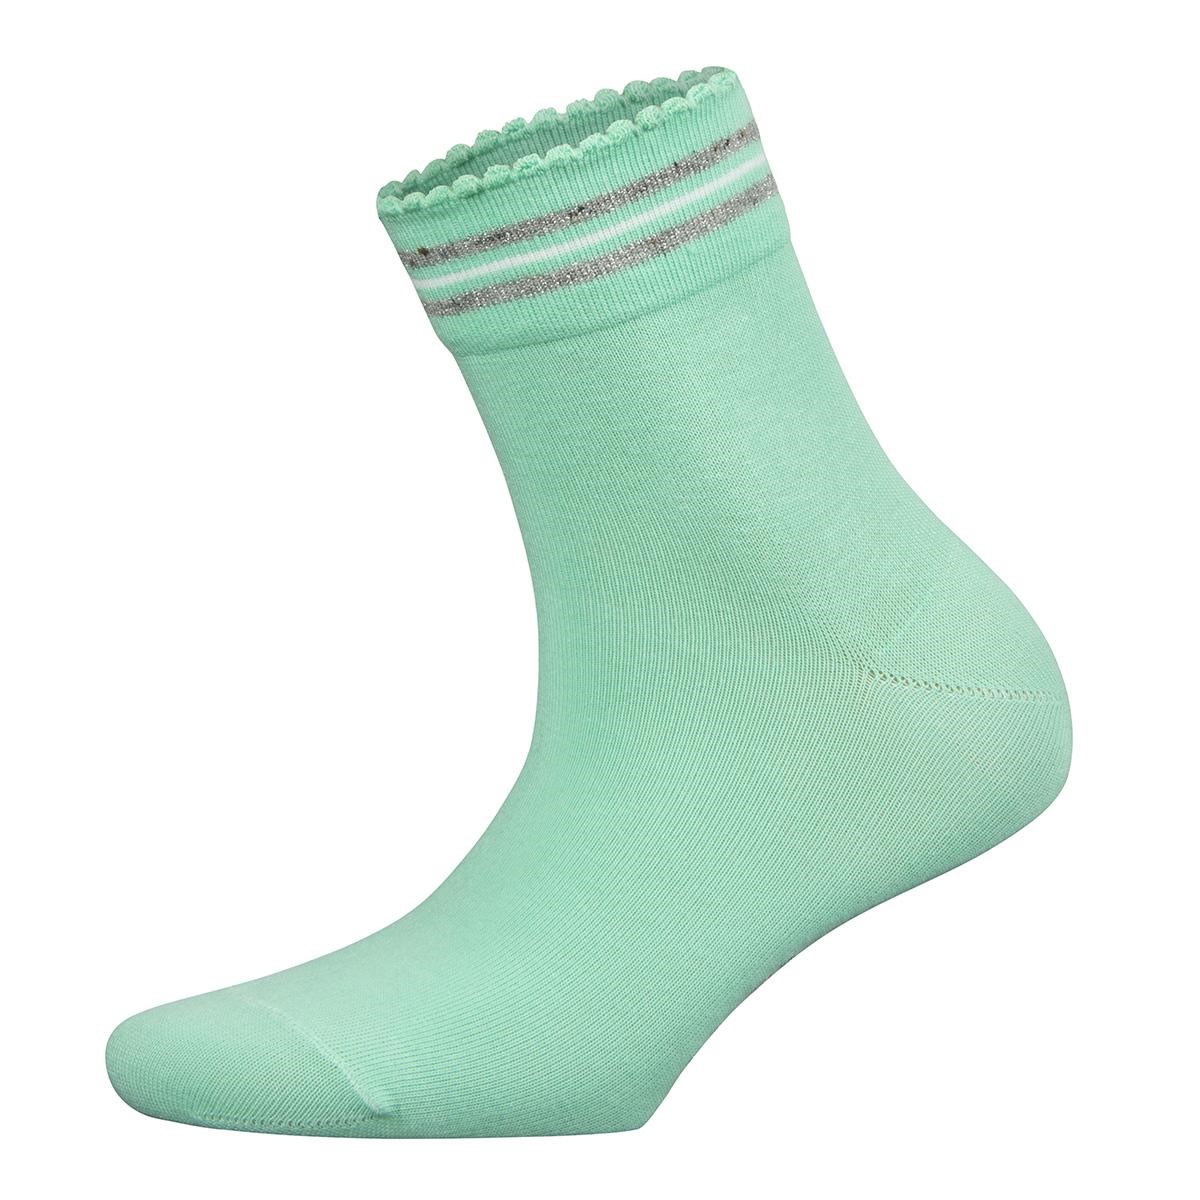 The Falke Picot Stripe Sock